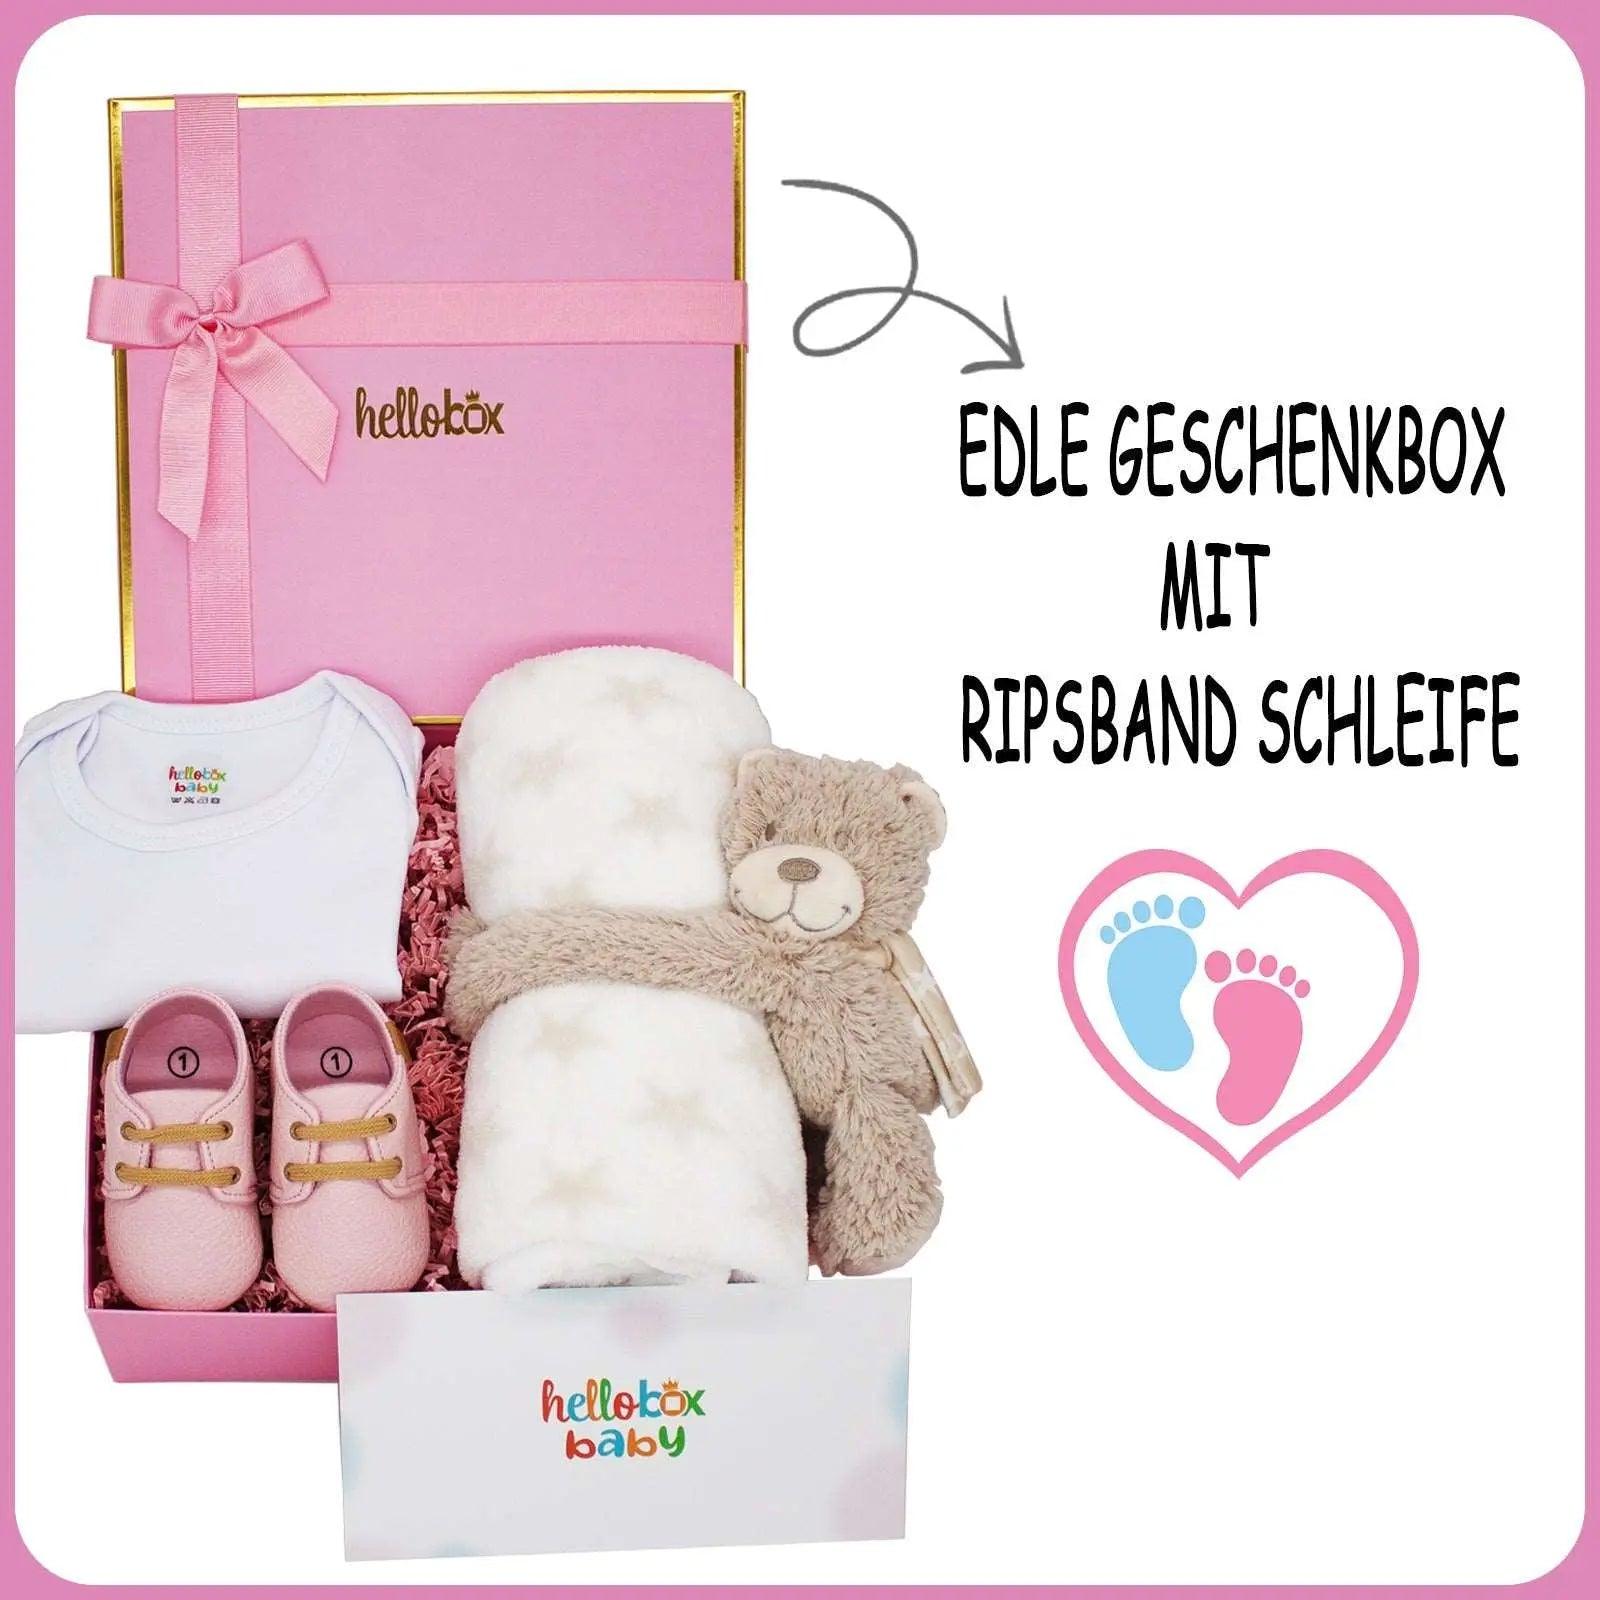 Hello box Baby Geschenkset zur Geburt für mädchen, Neugeborene geschenkset mit Lauflernschuhe, Babydecke, Kuscheltier Rosa Mädchen-1